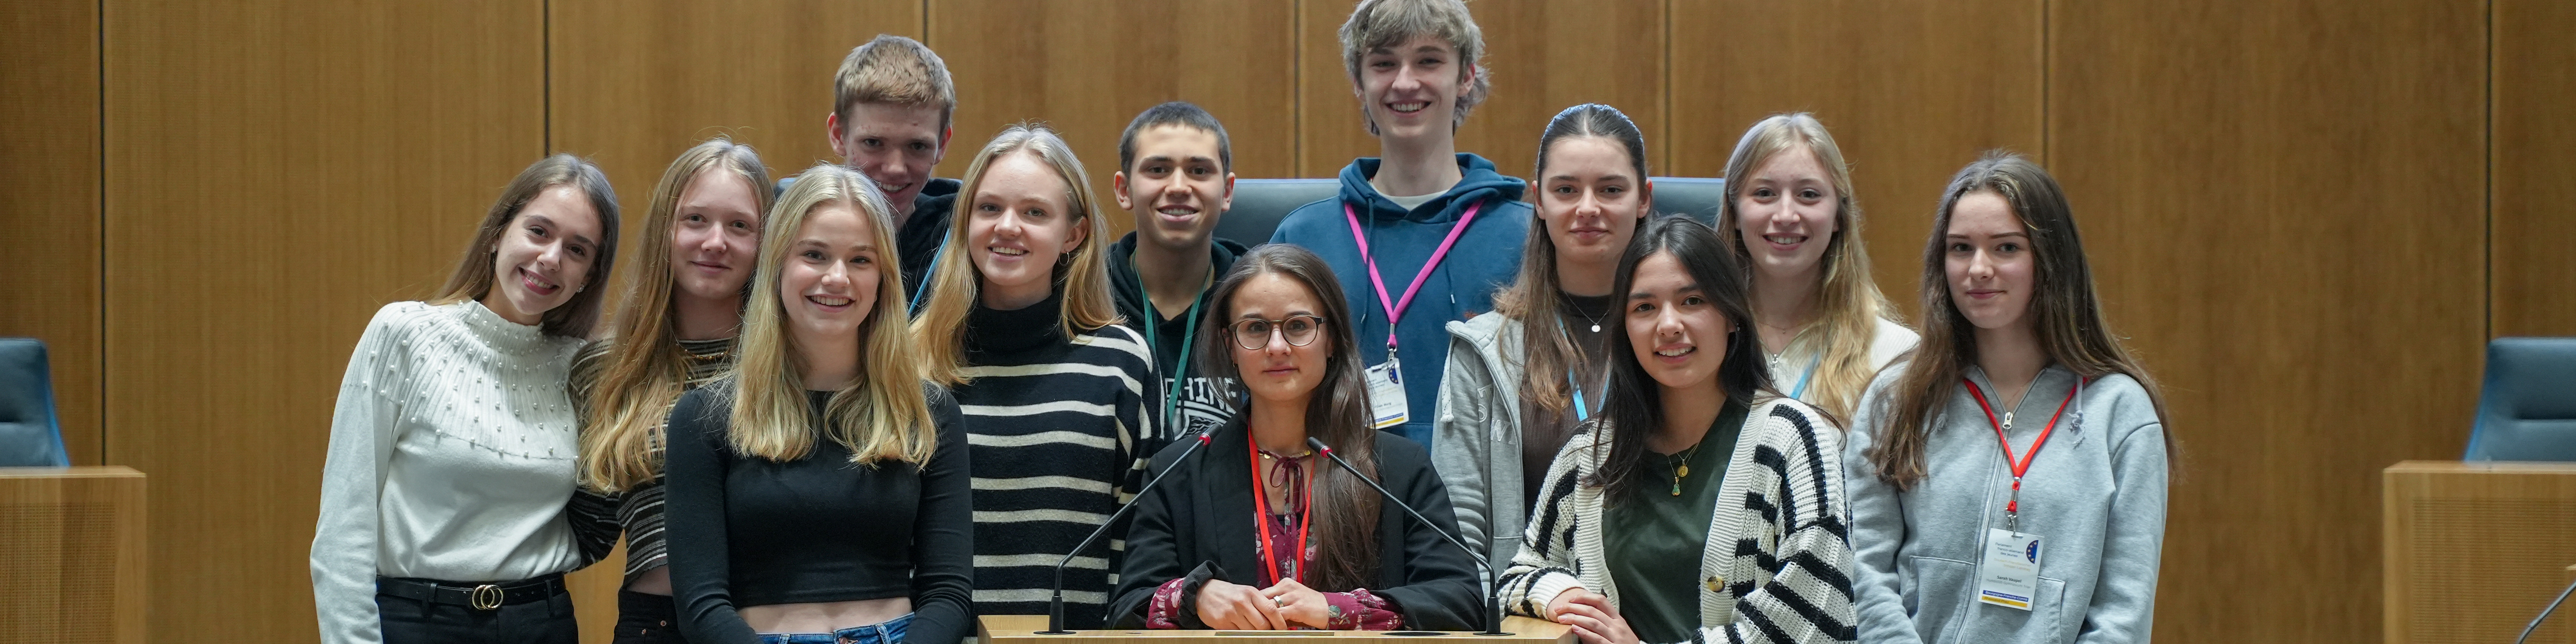 Schülerinnen und Schüler im Plenarsaal des Landtags